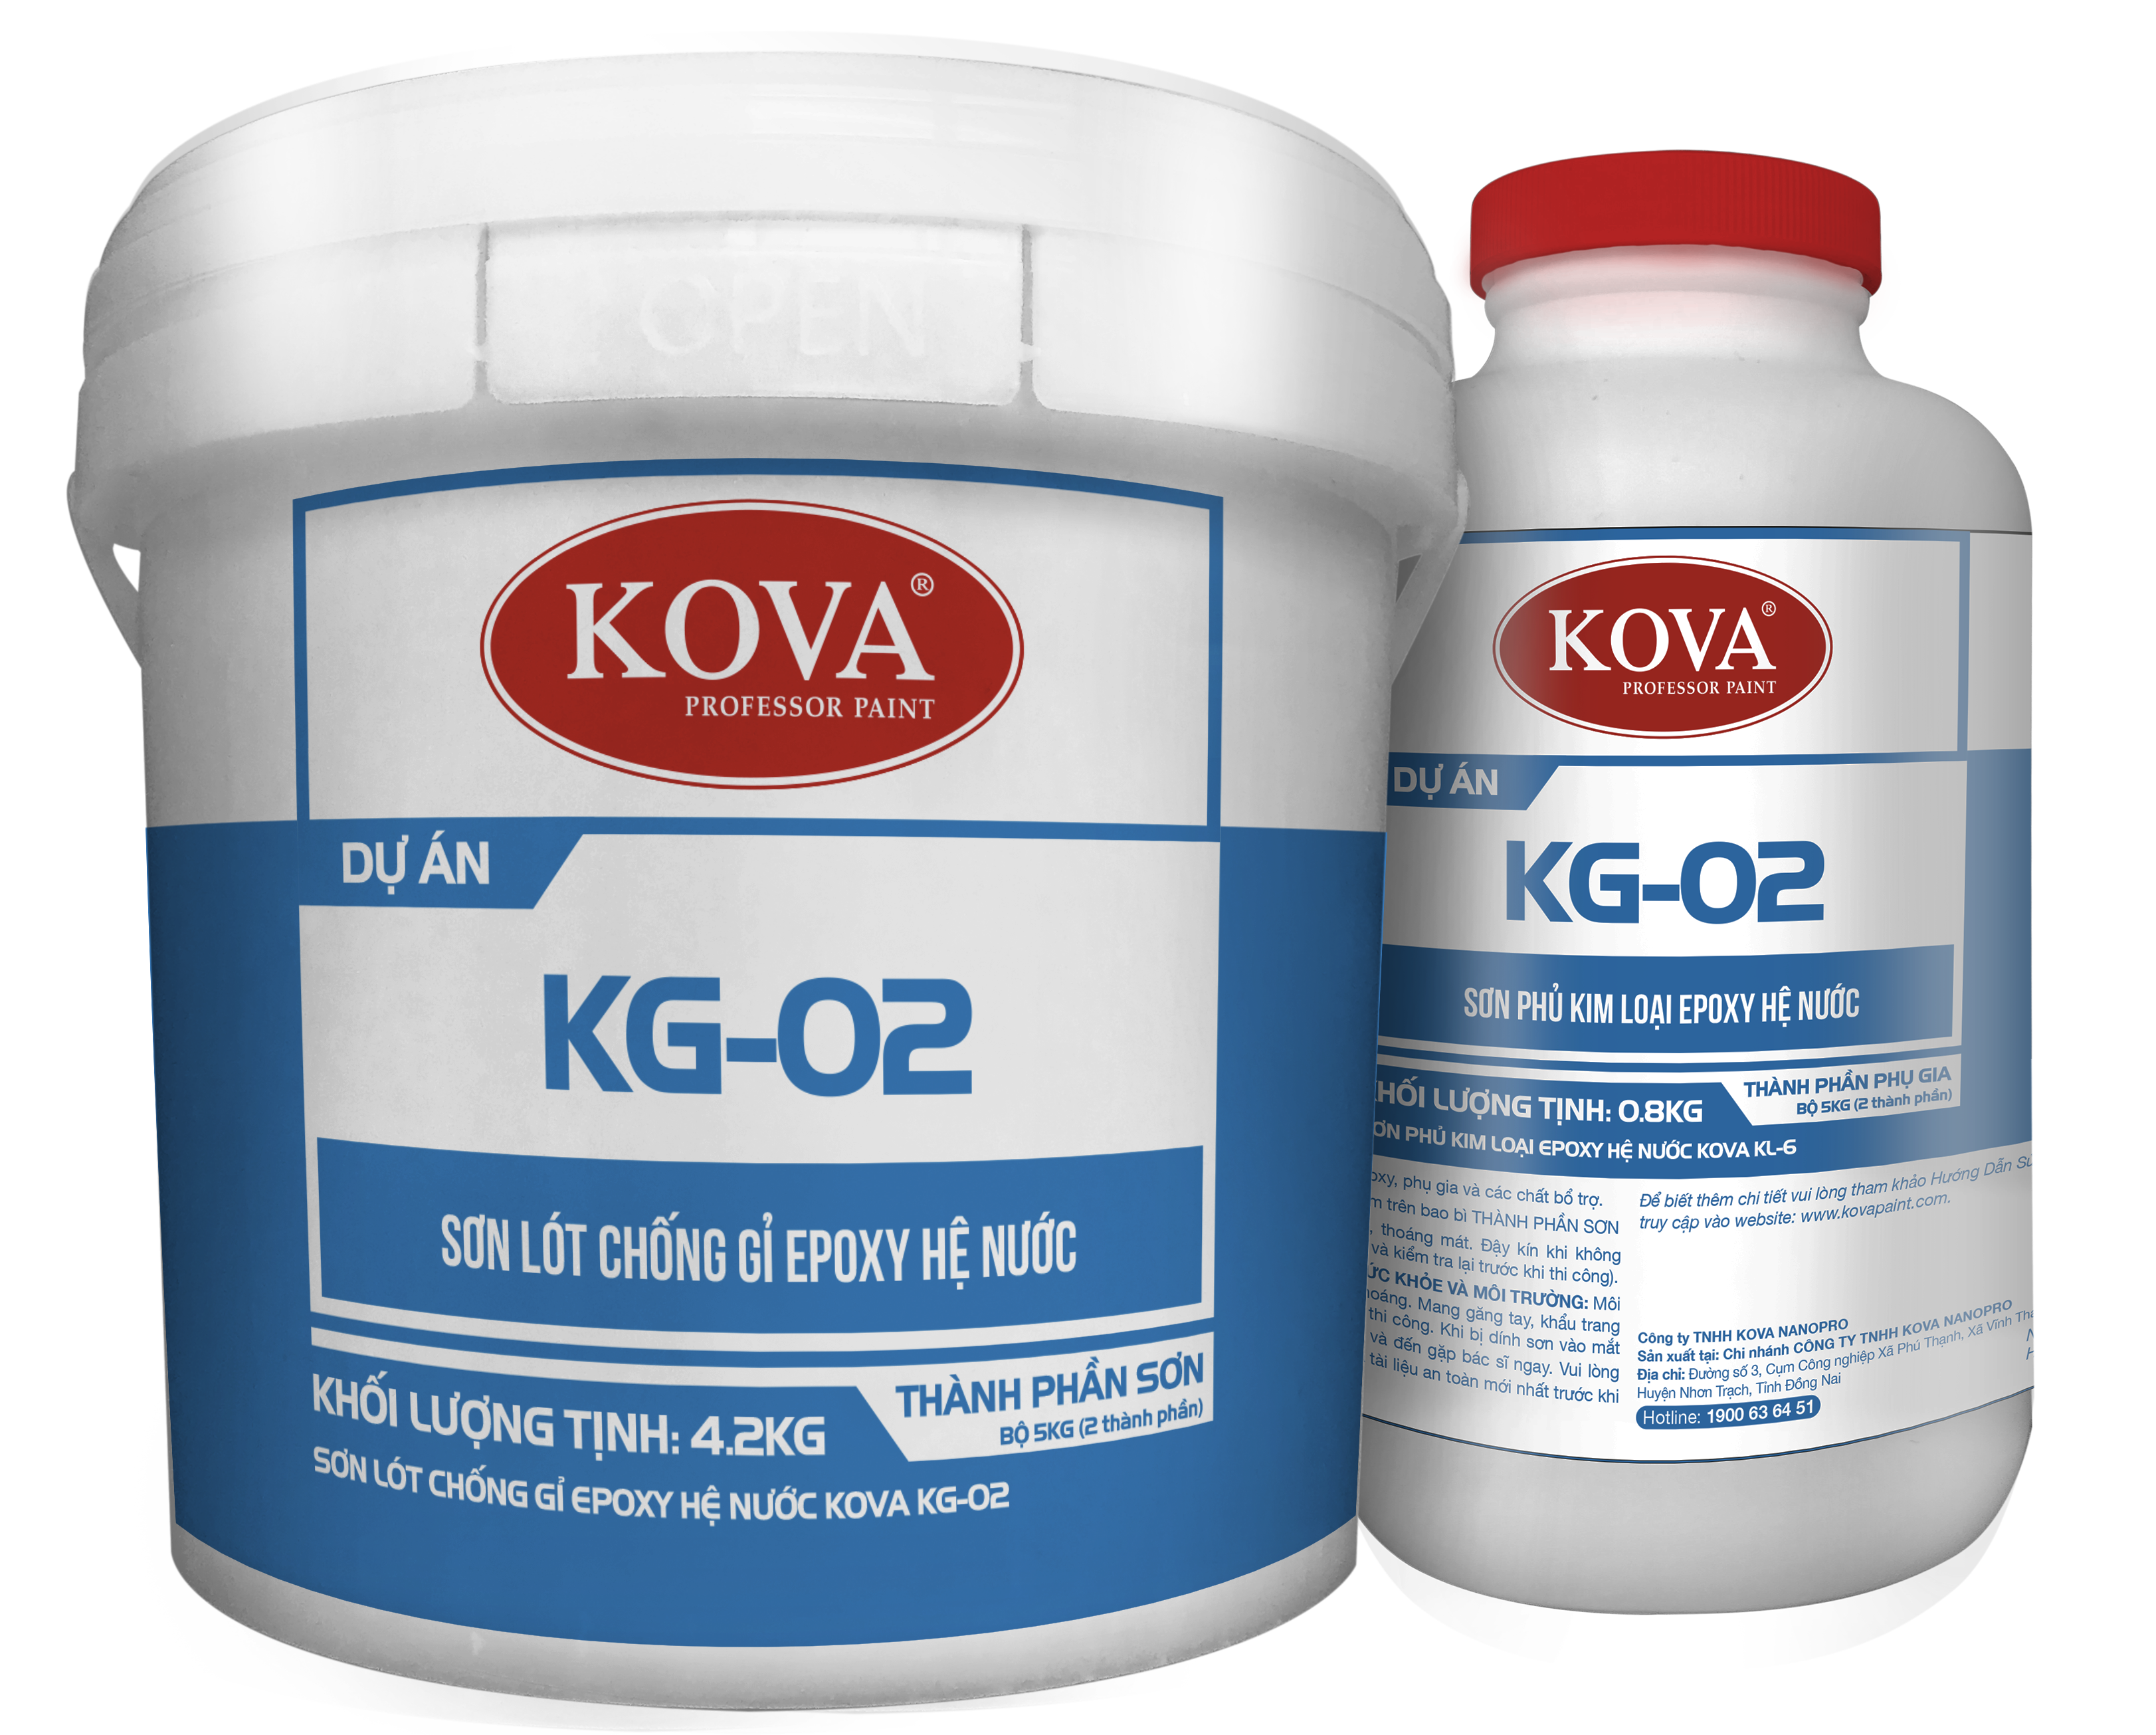 Sơn Lót Chống Gỉ Epoxy Hệ Nước KOVA KG-02 - Sơn lót chống gỉ KOVA KG-02 mang lại khả năng chịu nước tốt, bảo vệ cho bề mặt bằng thép khỏi rỉ sét trong môi trường khắc nghiệt. Hãy xem hình ảnh cho sản phẩm này để biết thêm chi tiết.